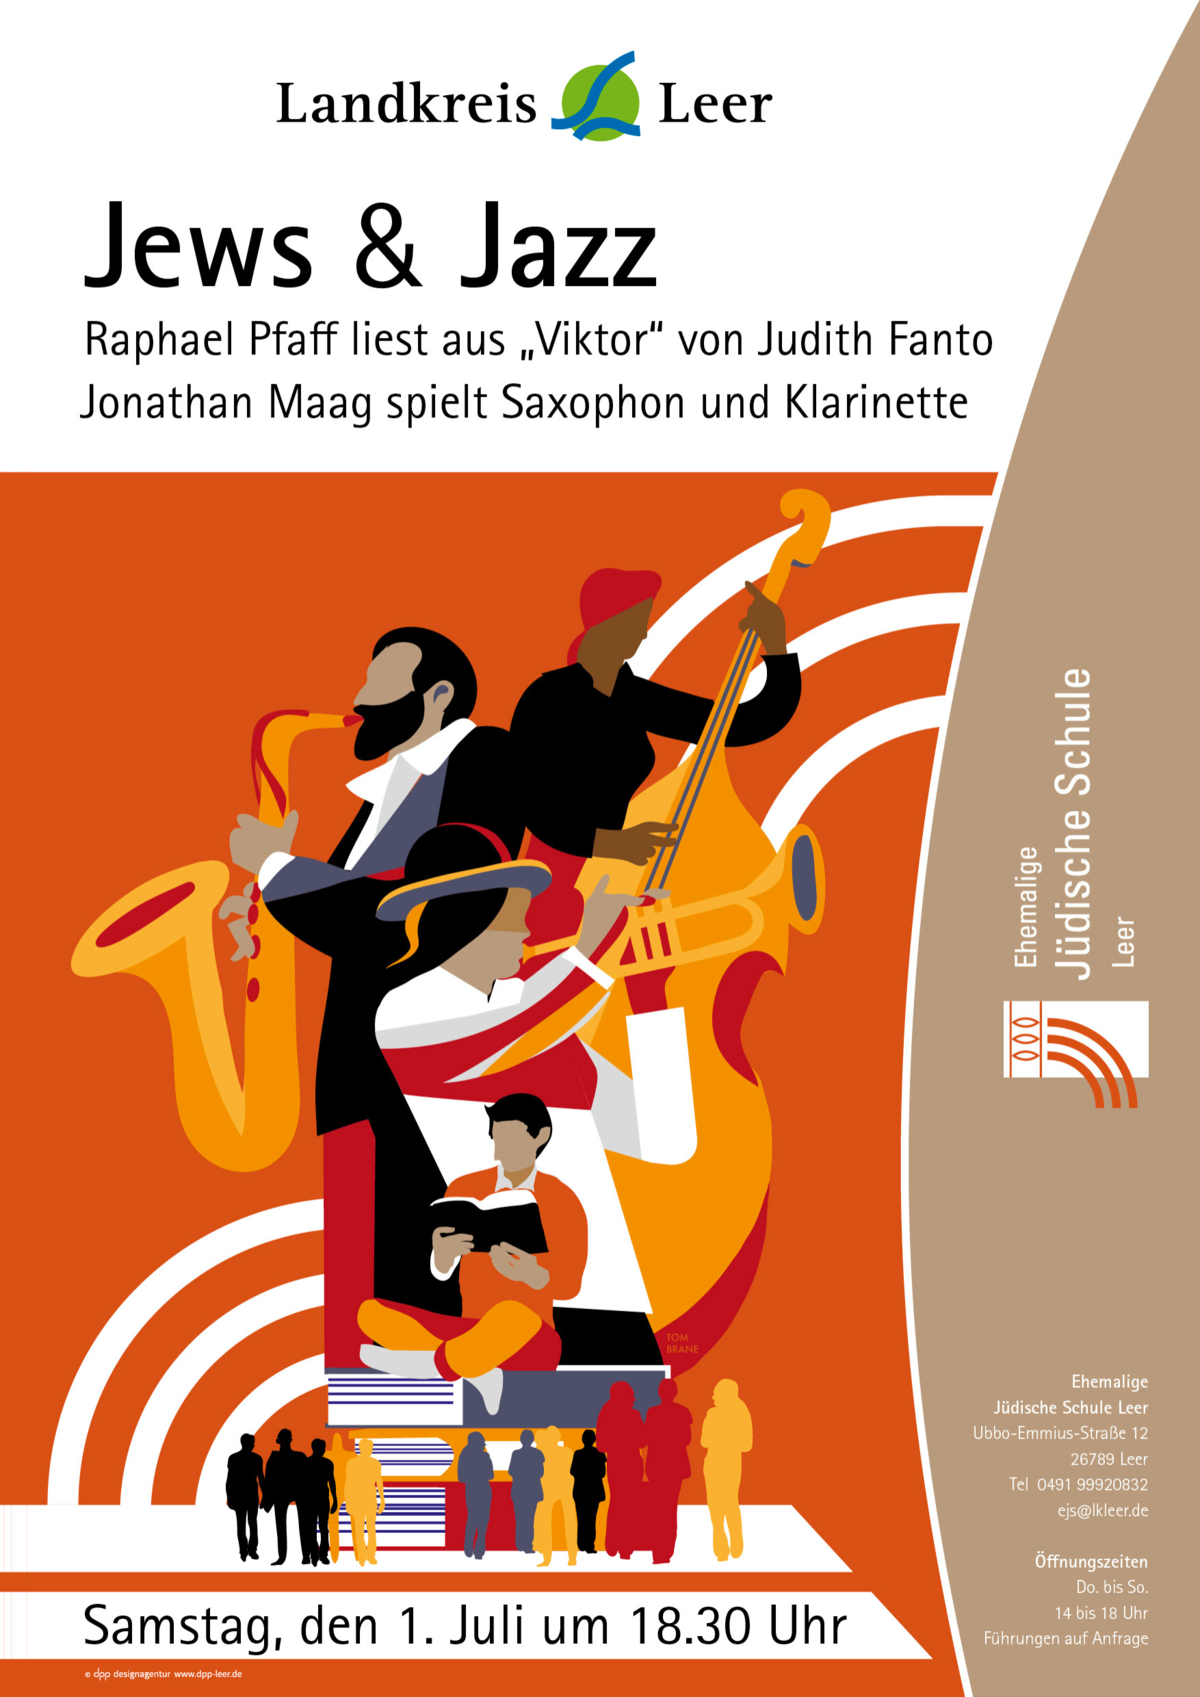 Bild vergrößern: Plakat zur Veranstaltung: Jews und Jazz